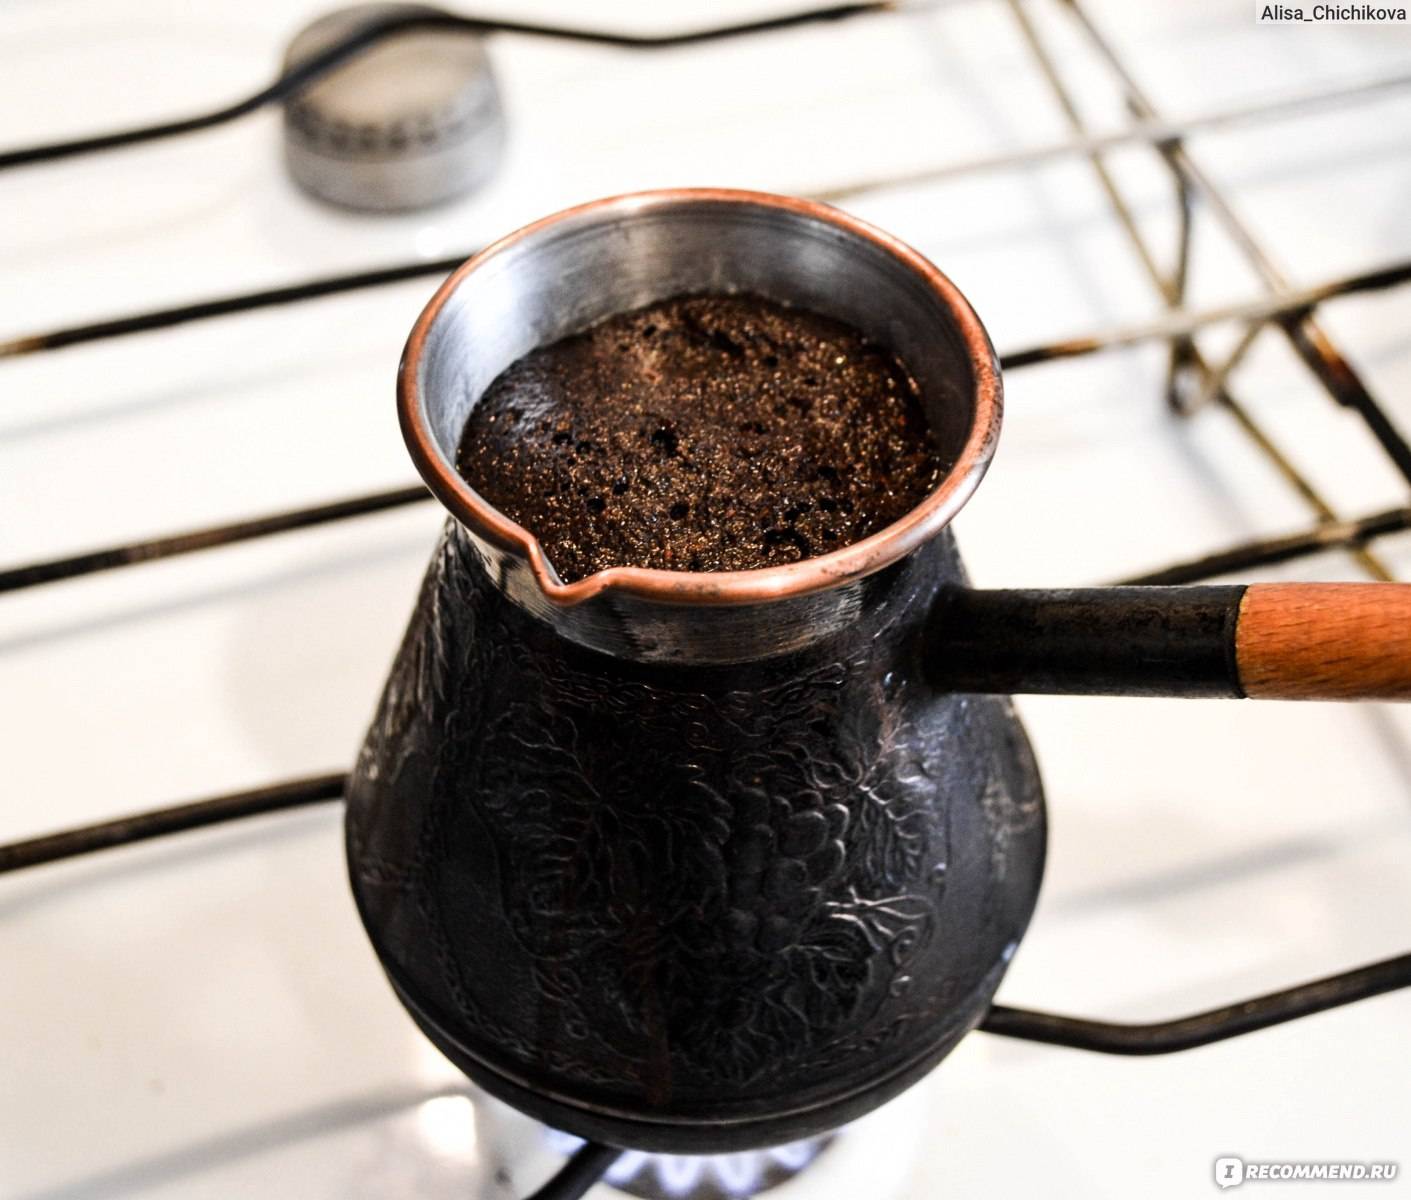 Как варить кофе в кастрюле на плите? как правильно сварить дома без турки молотый продукт, рецепт напитка